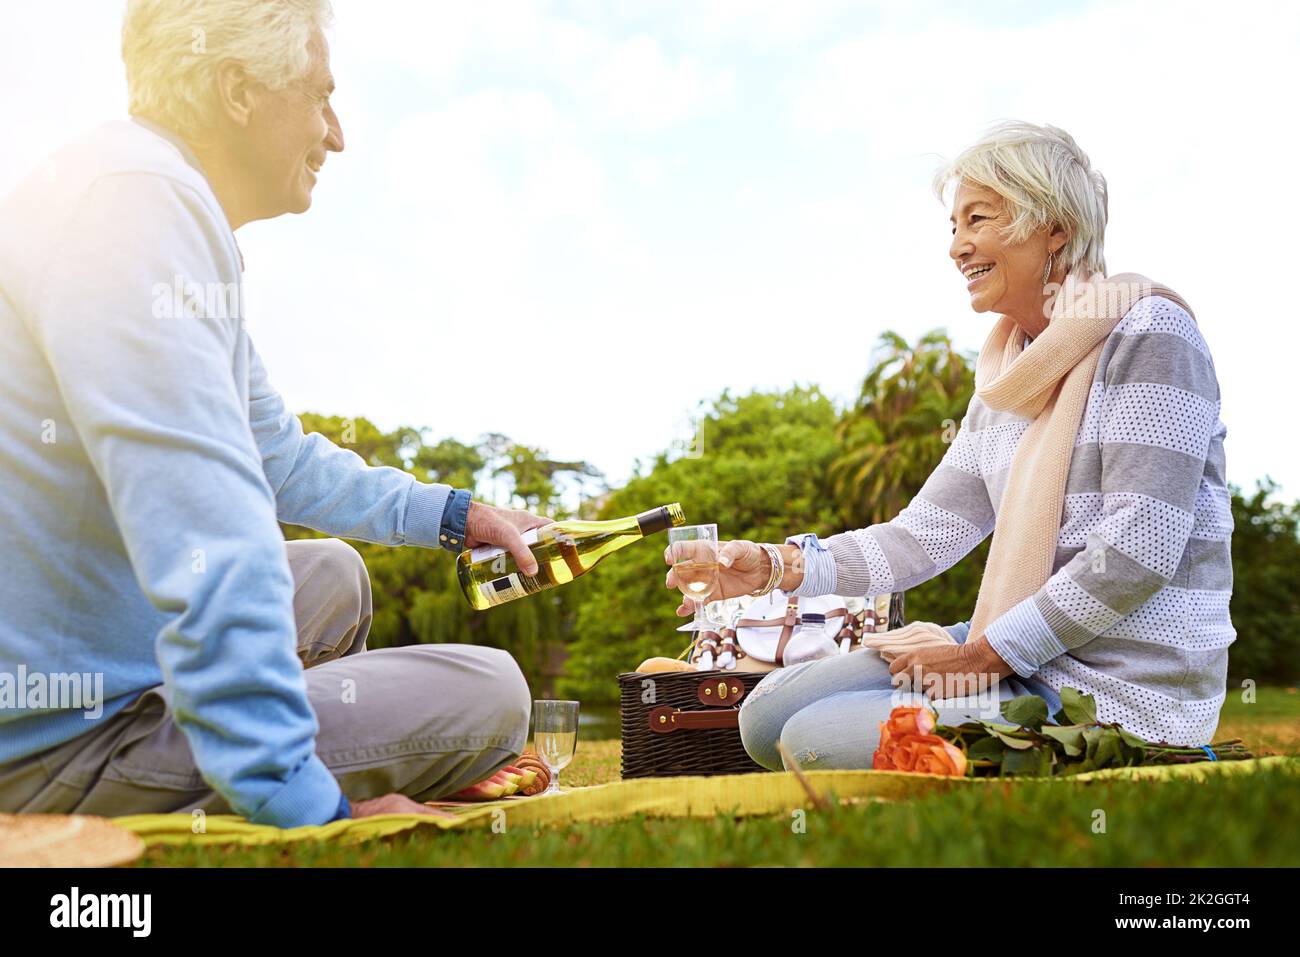 Collage sur un pétillant. Photo d'un couple senior en train de pique-niquer dans un parc. Banque D'Images